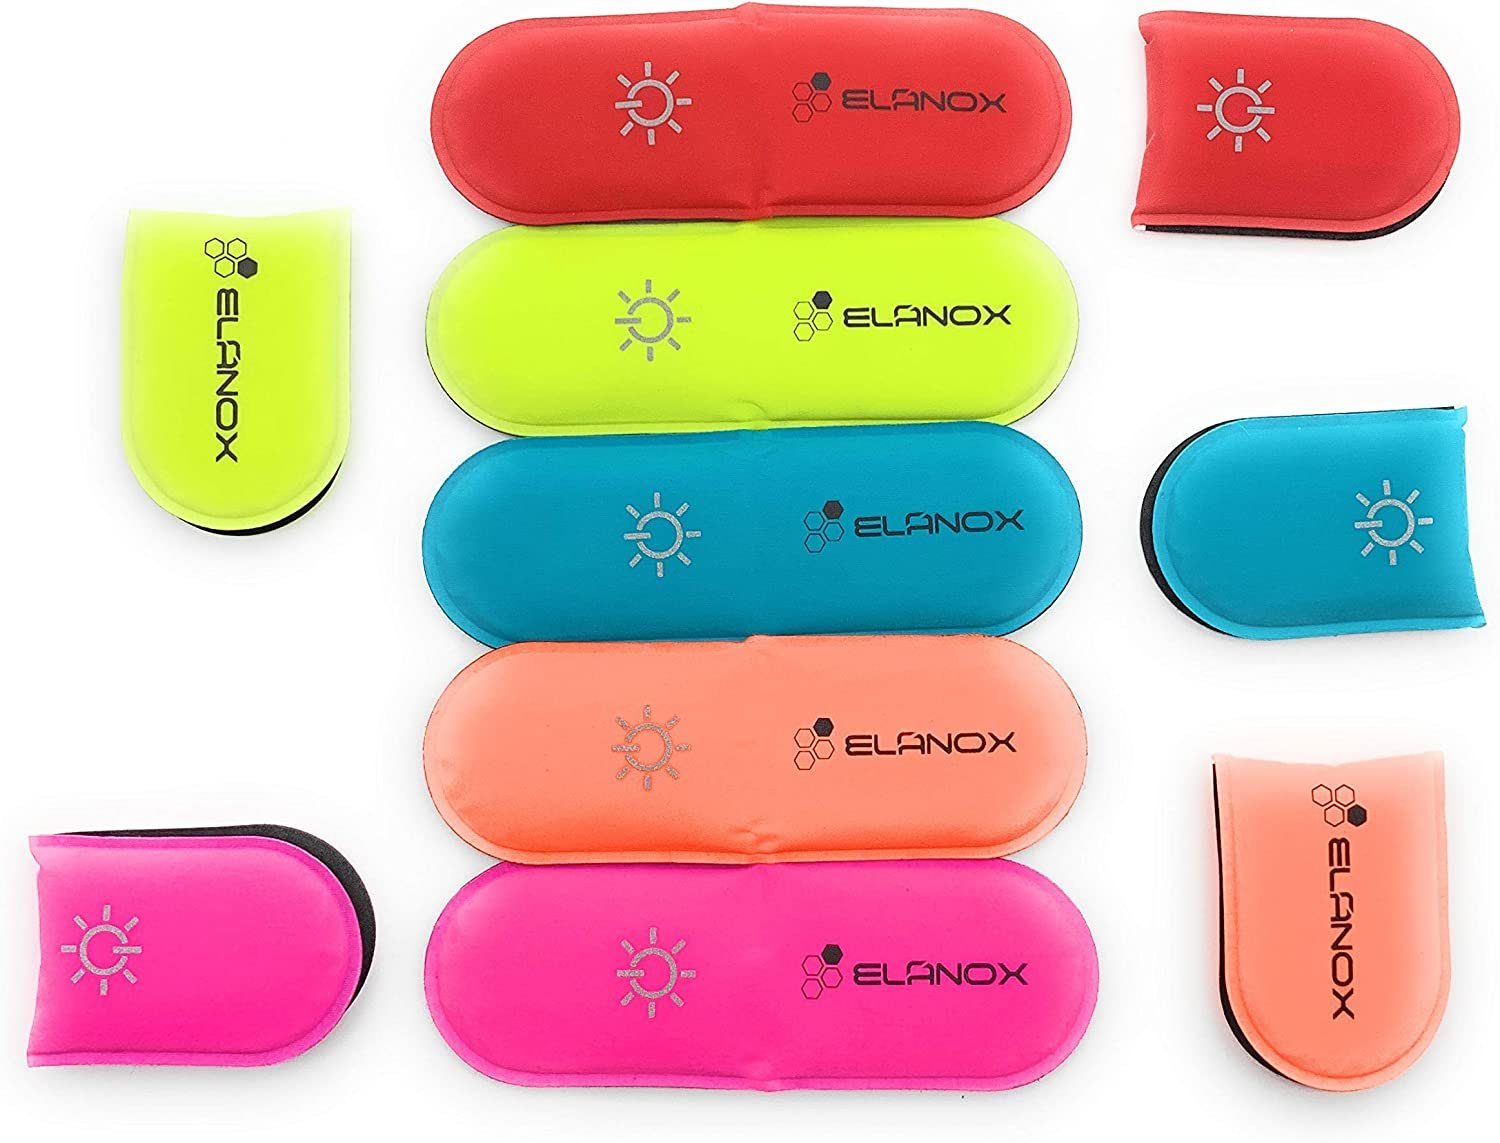 Clip LED für Rucksack rosa Sicherheit Kleidung Sichtbarkeit ELANOX mehr für ED Blinklicht